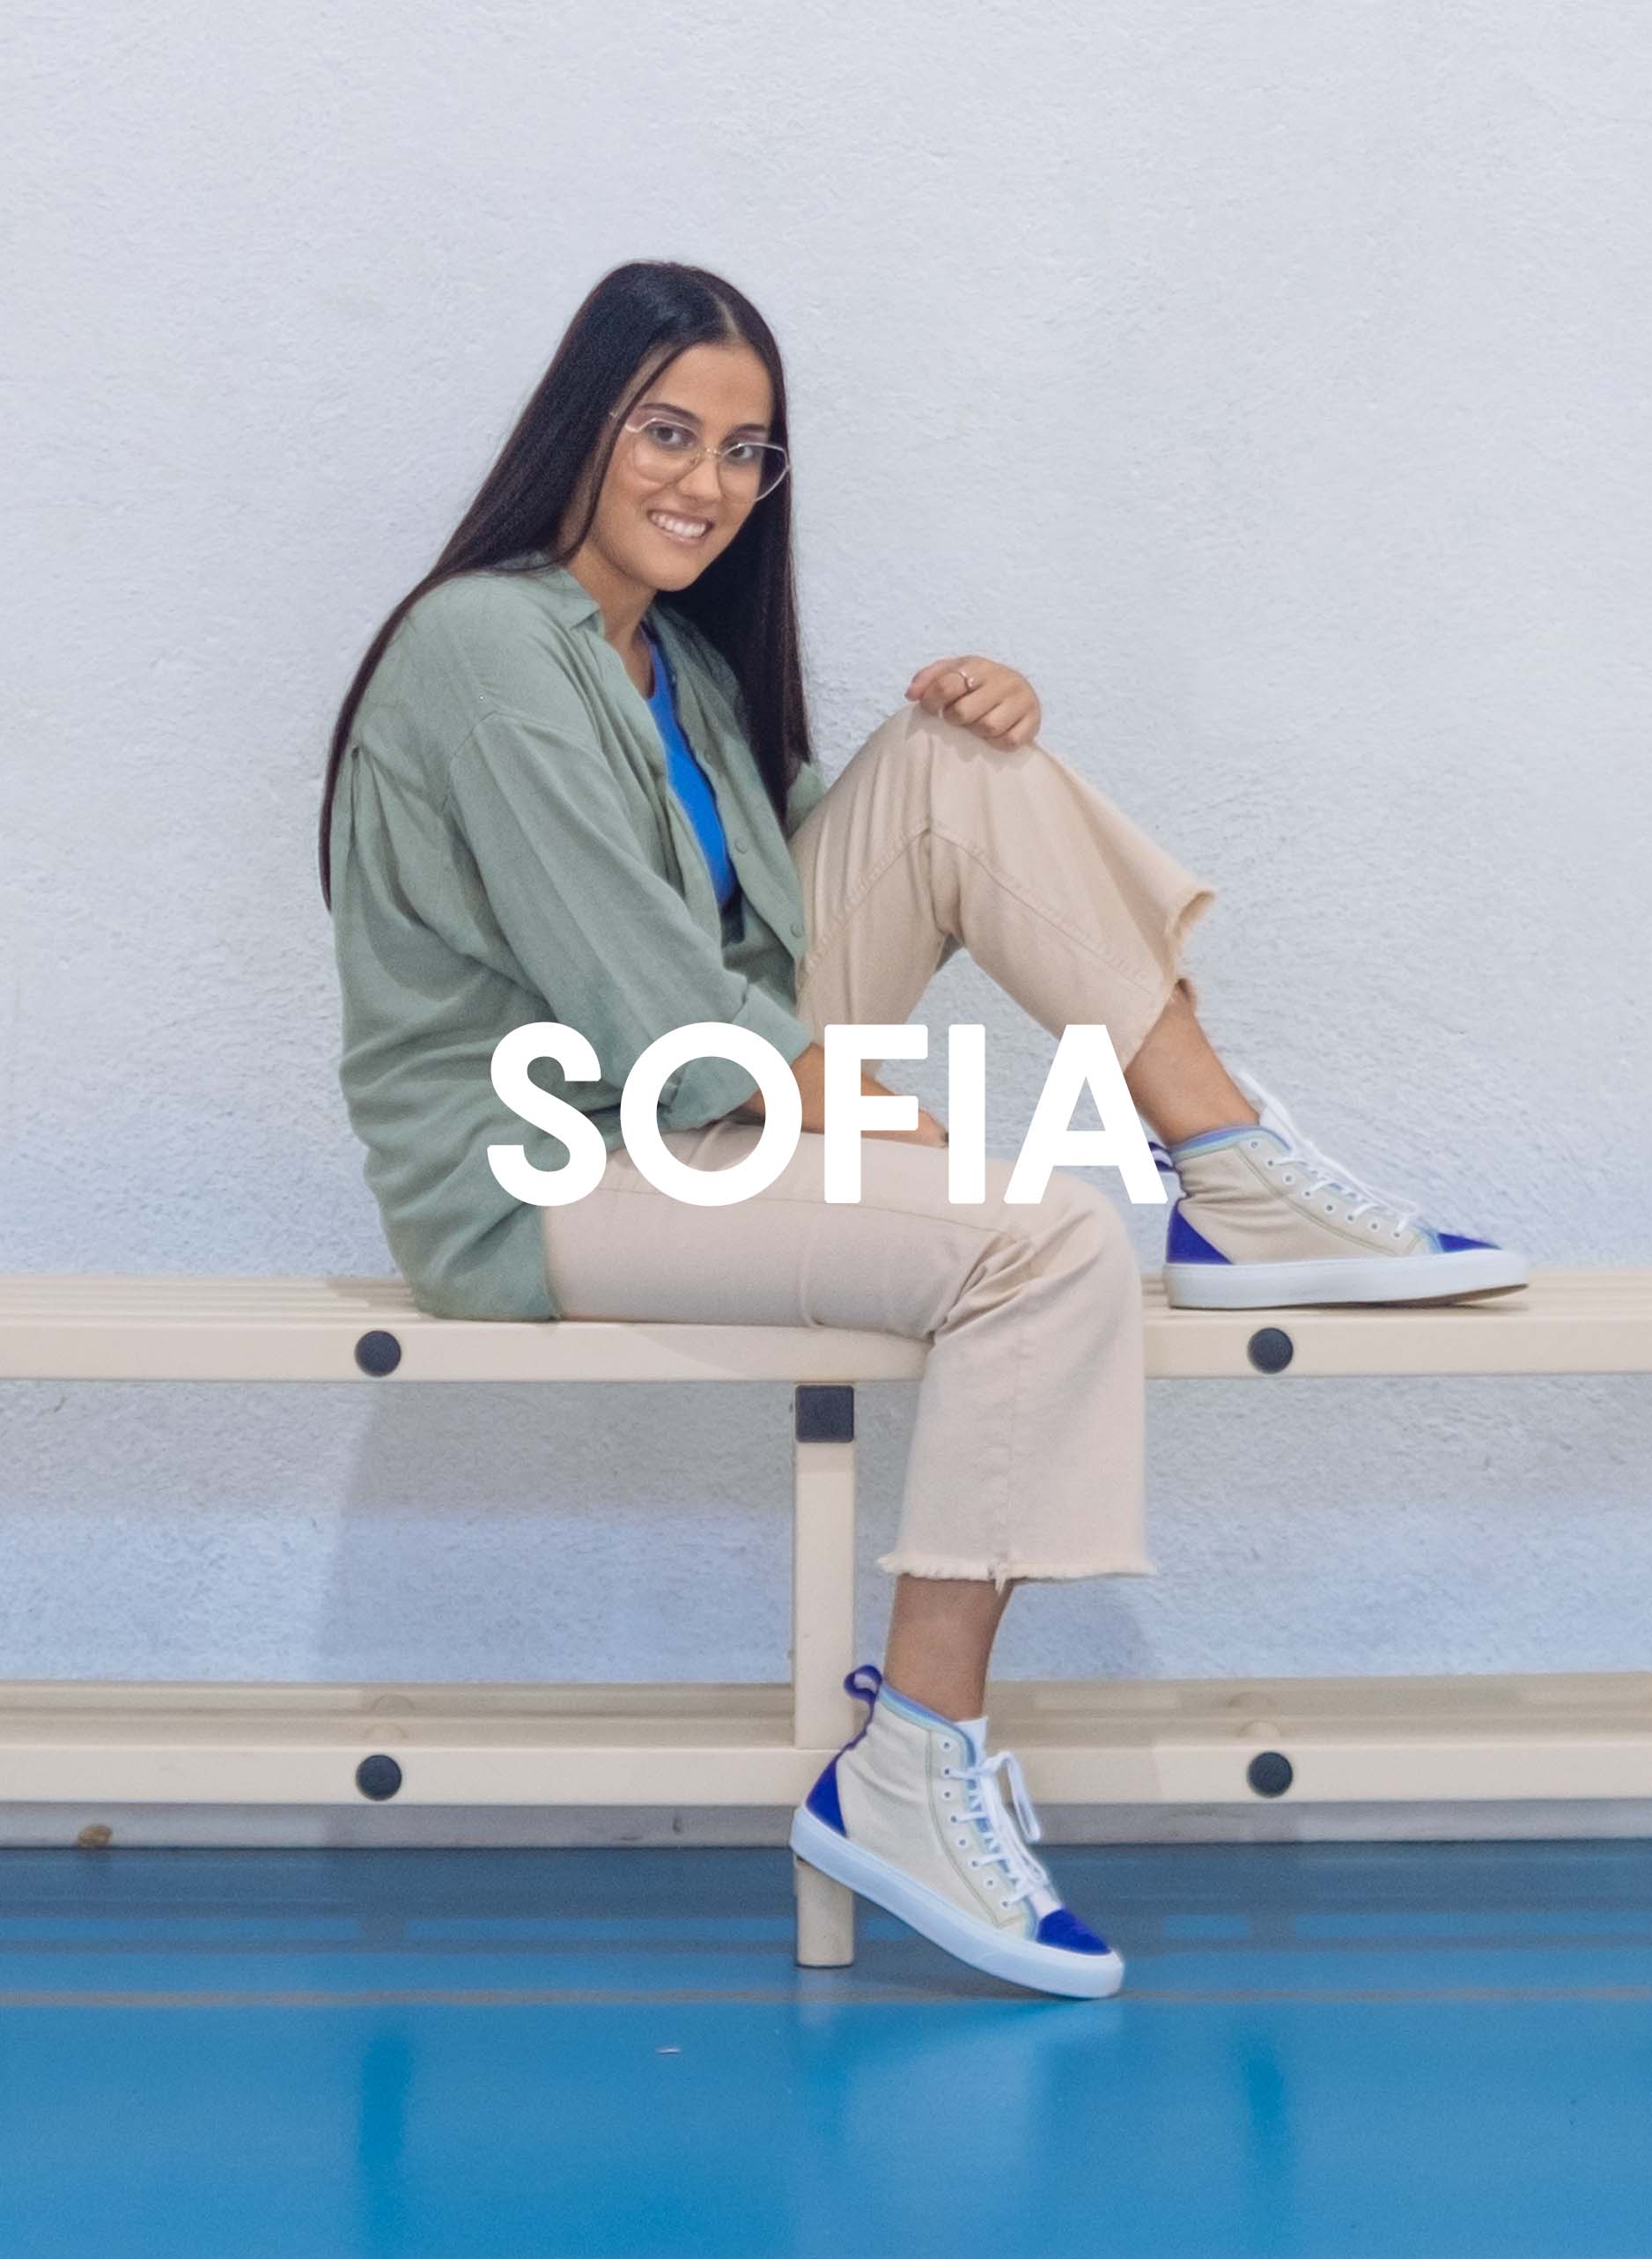 Sofia indossa una camicia verde e pantaloni beige seduta su una panchina con Diverge sneakers, promuovendo l'impatto sociale e le scarpe personalizzate attraverso il progetto Imagine.